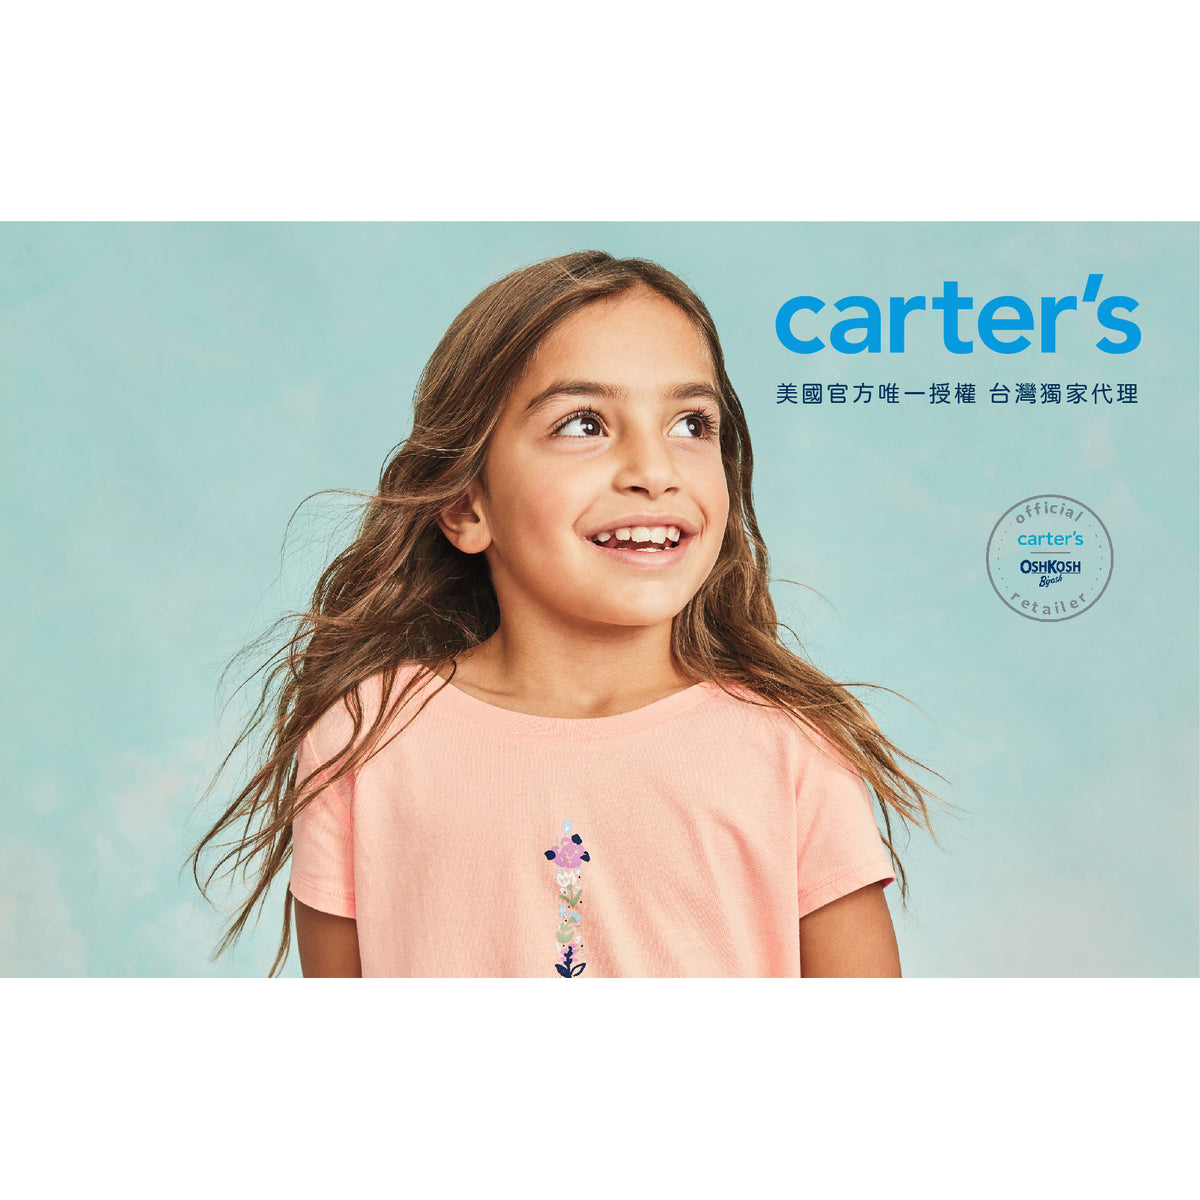 Carter's 可愛聖誕小花塗鴉上衣(6-8)